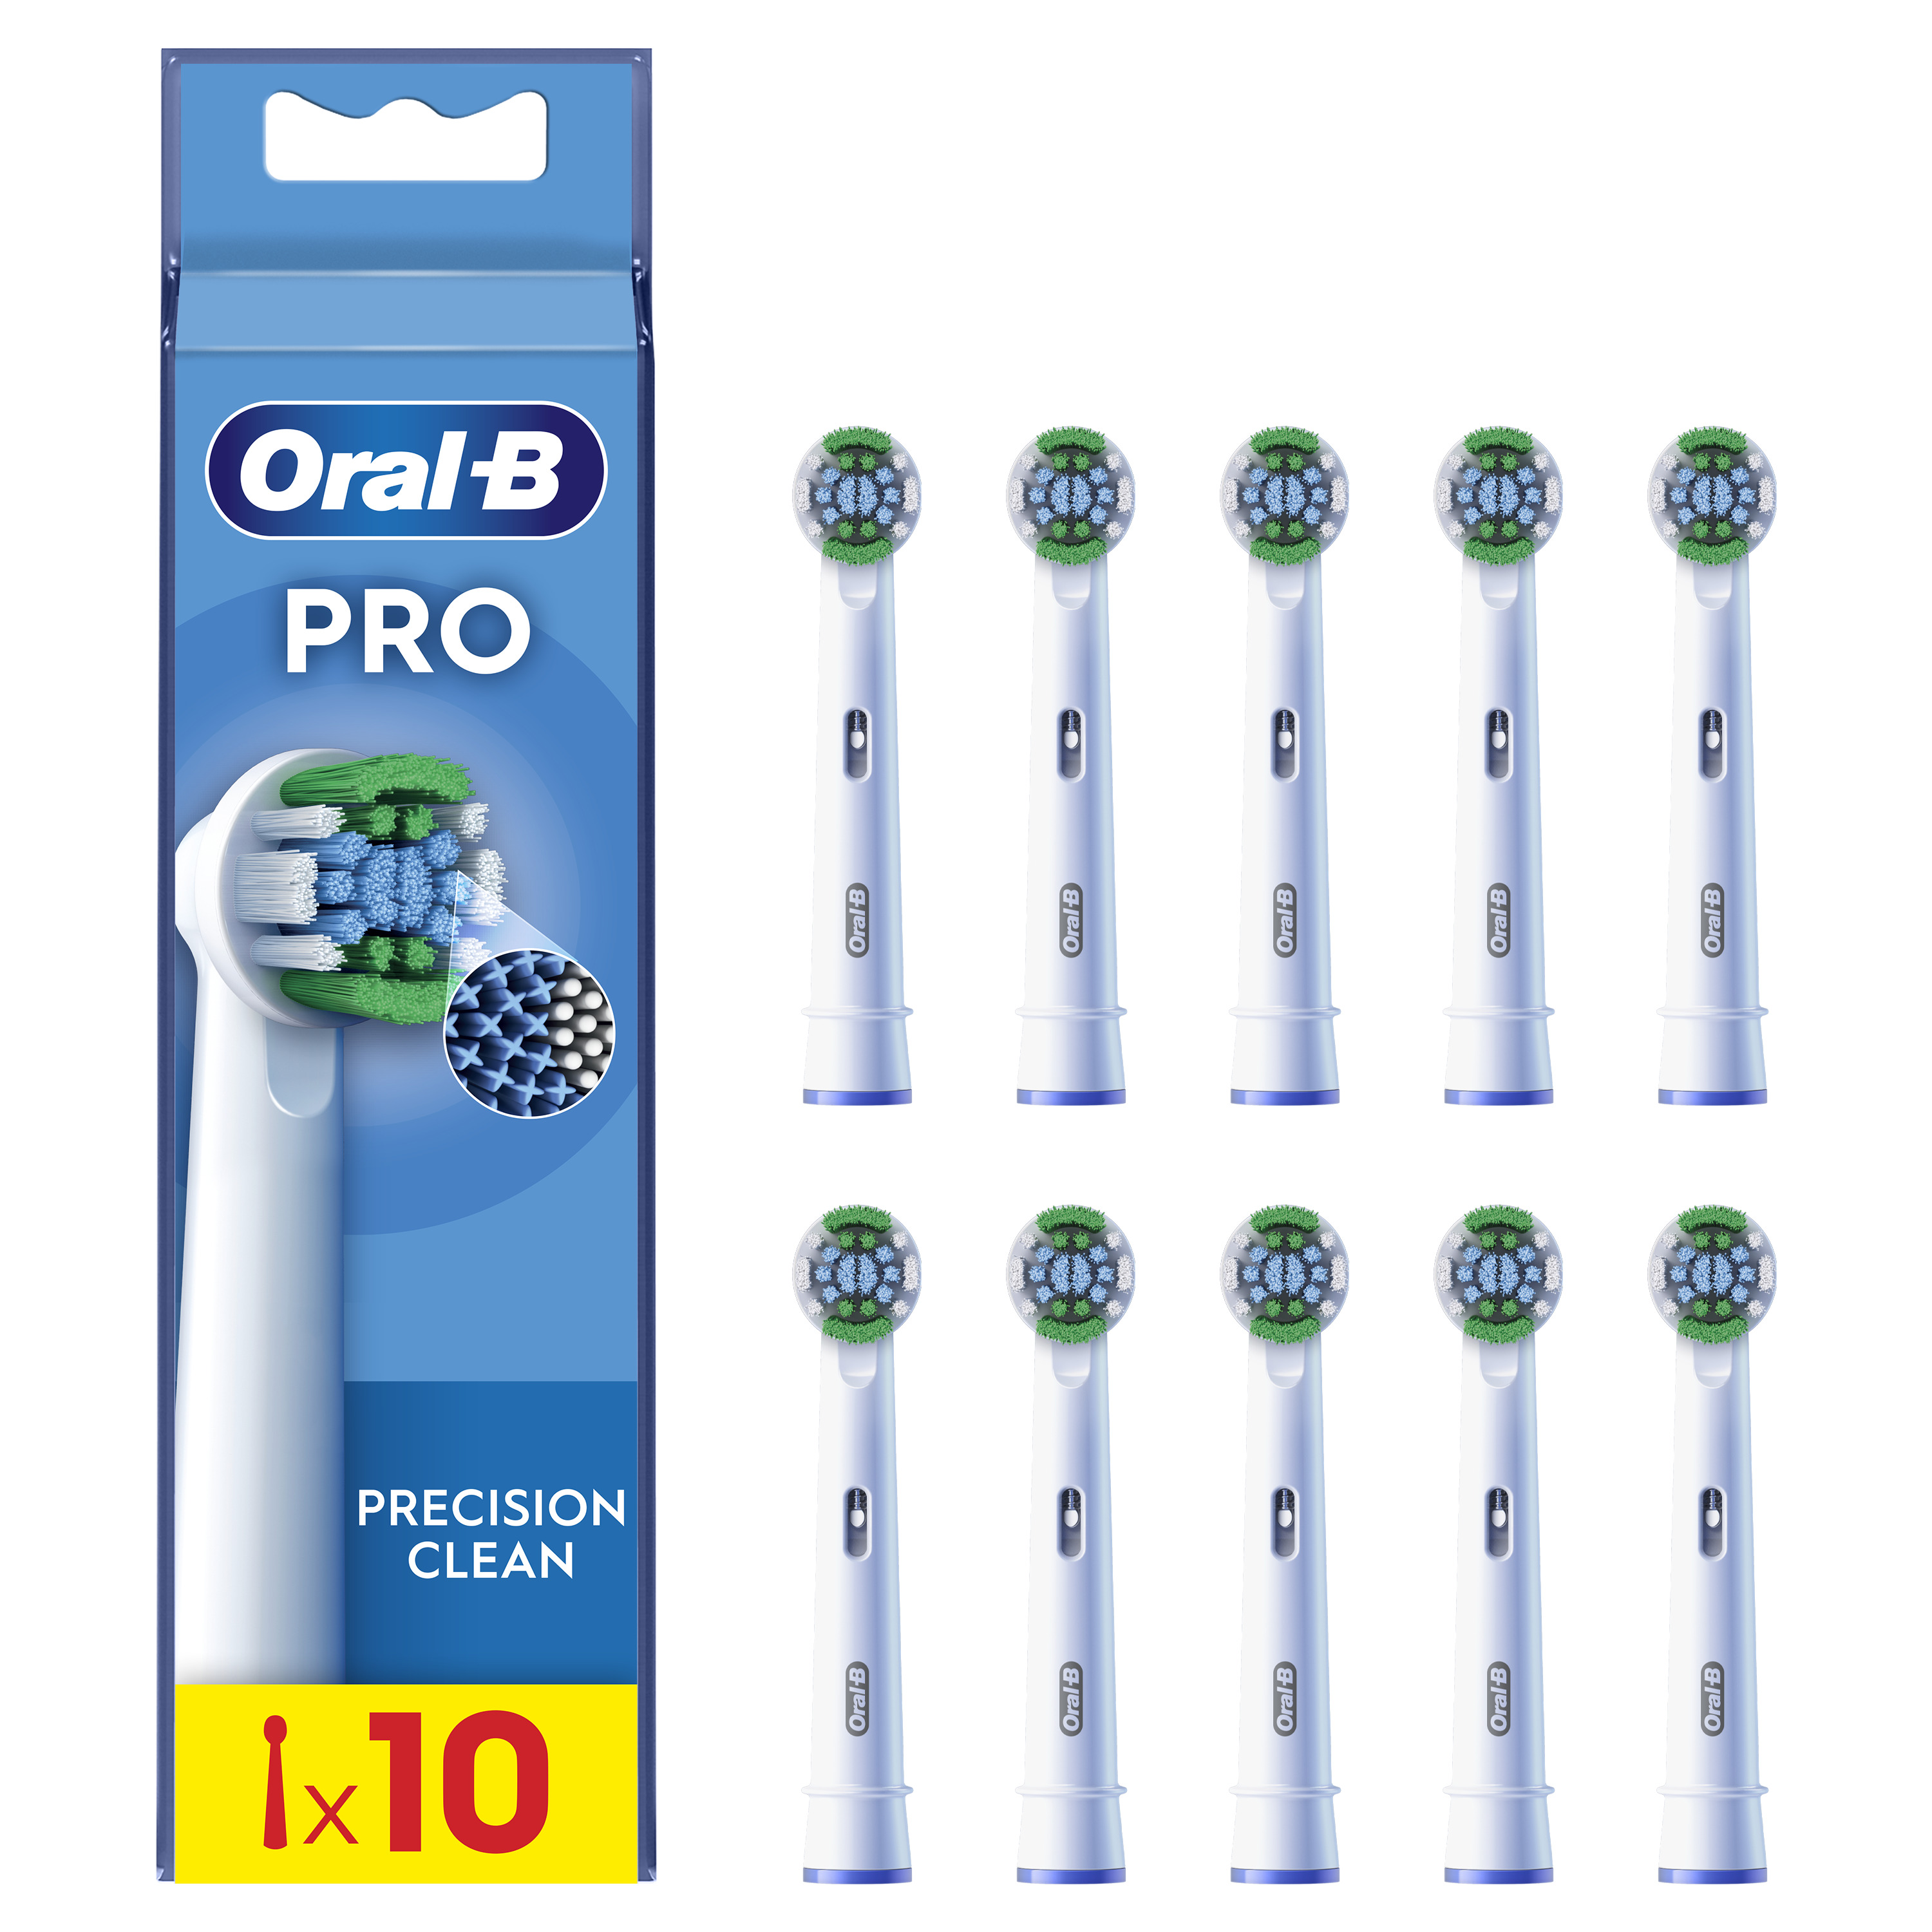 Oral-B - Oral-B Pro Precision Clean cabezales de recambio, pack de 10 unidades